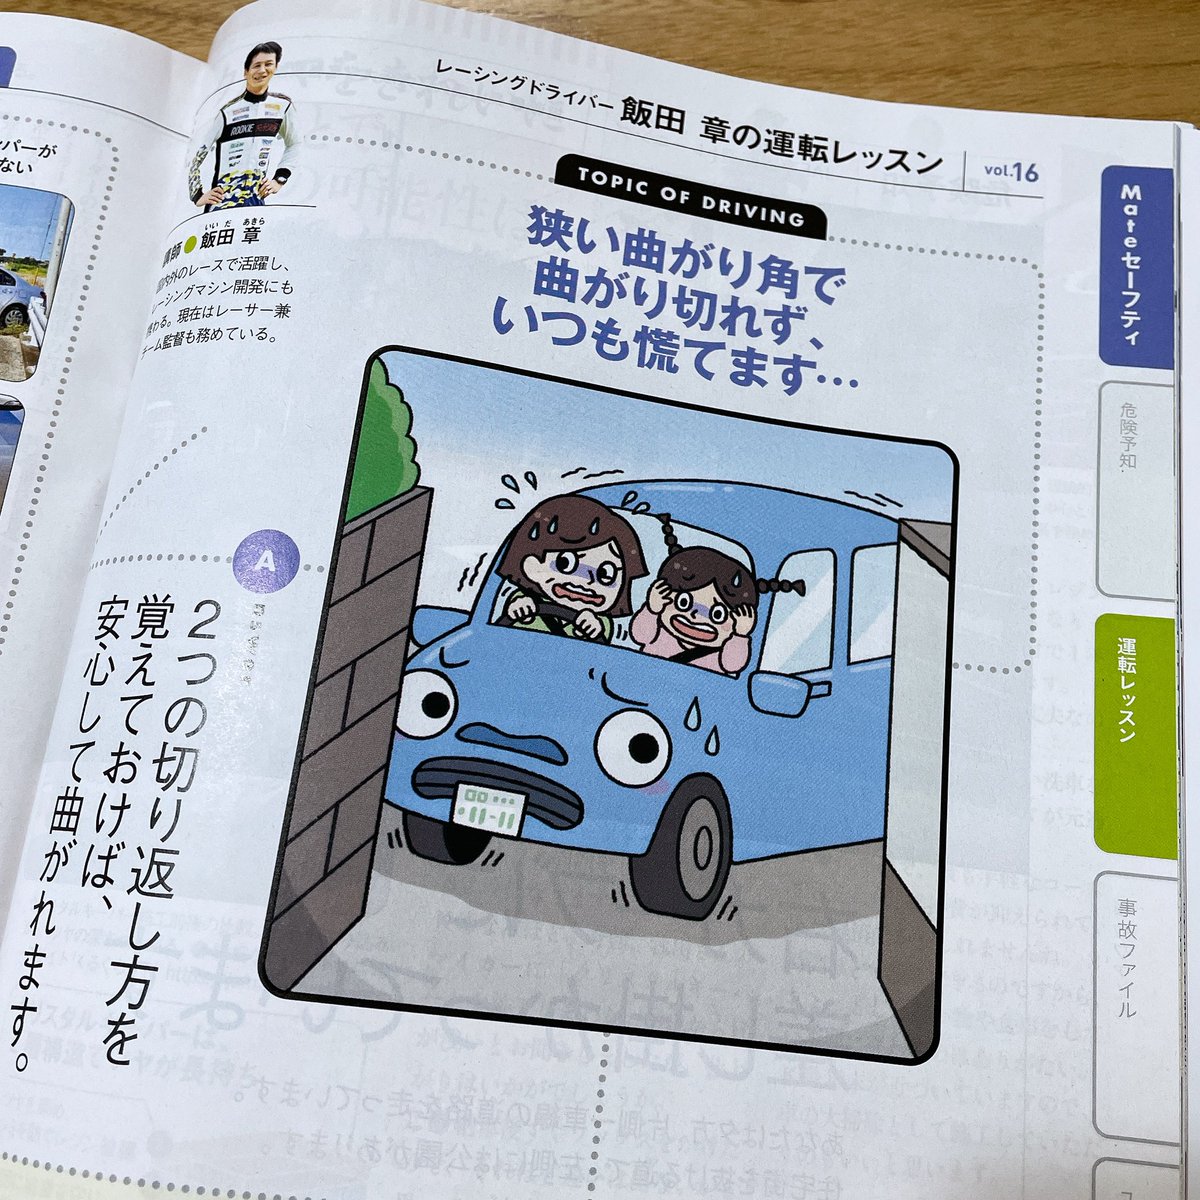 『JAF Mate』さん11、12、1月号の『飯田章の運転レッスン』コーナーの挿絵を描かせていただきました!1月号にはポケモンドライブすごろく特集があって可愛いぞ〜!??✨ 